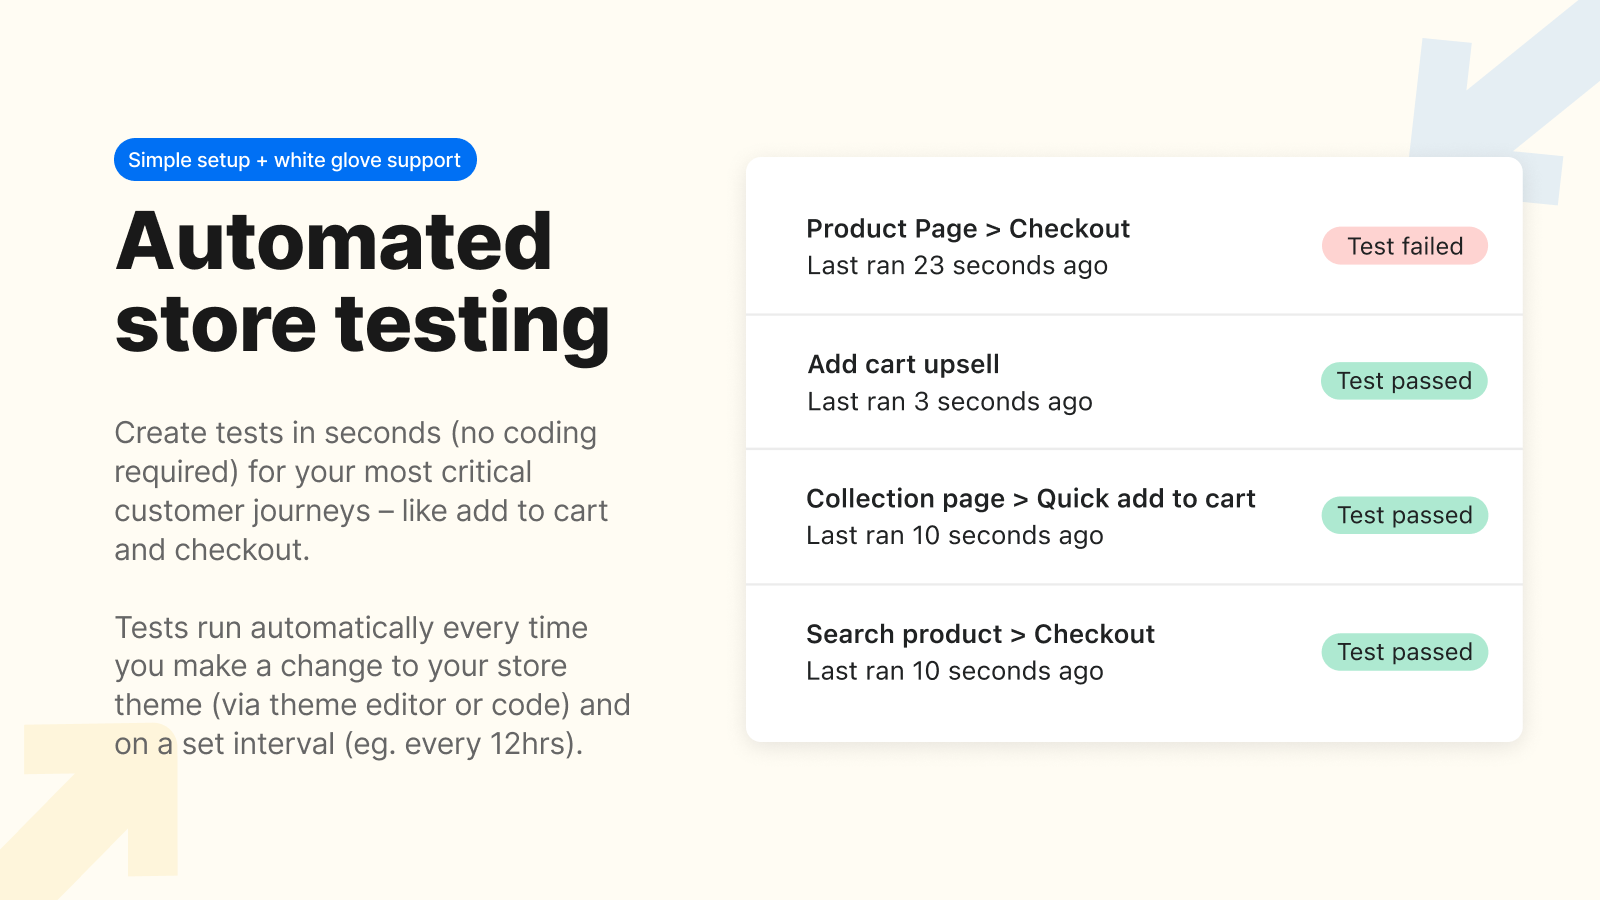 Monitore o status da plataforma para saber se a plataforma Shopify está inativa